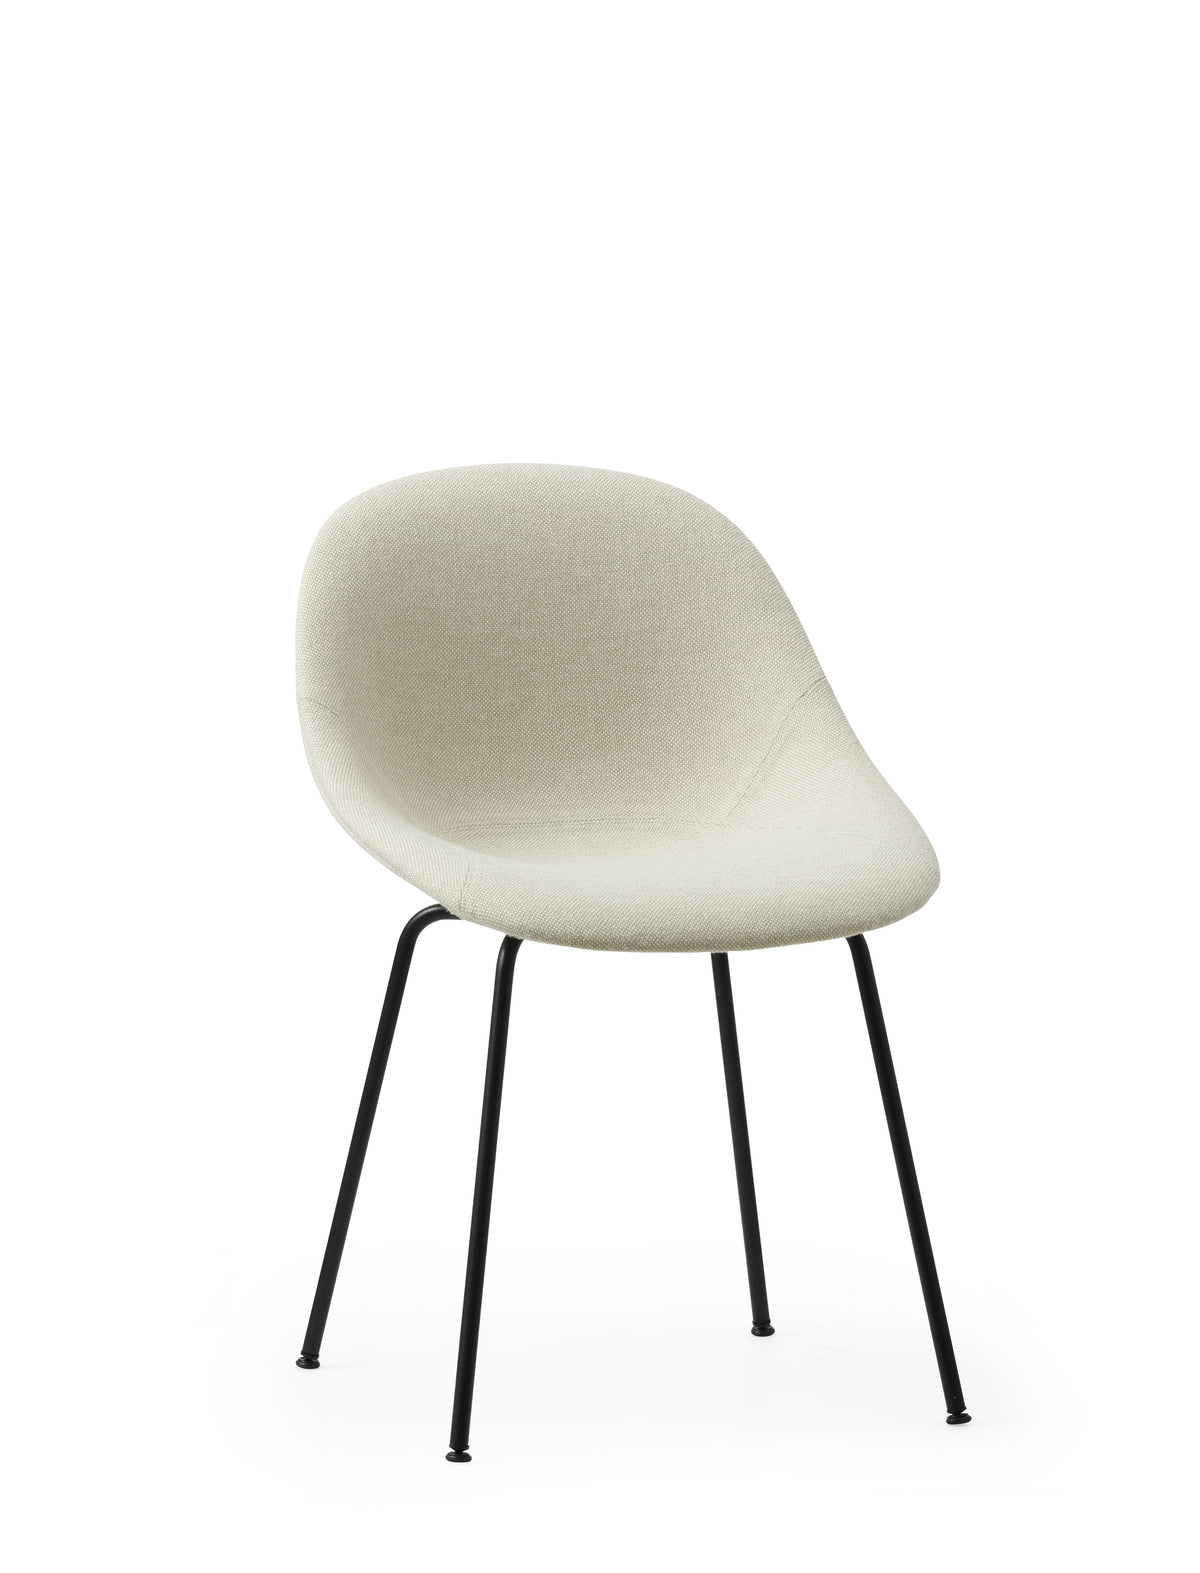 Mat Chair Full Upholstery Steel by Normann Copenhagen